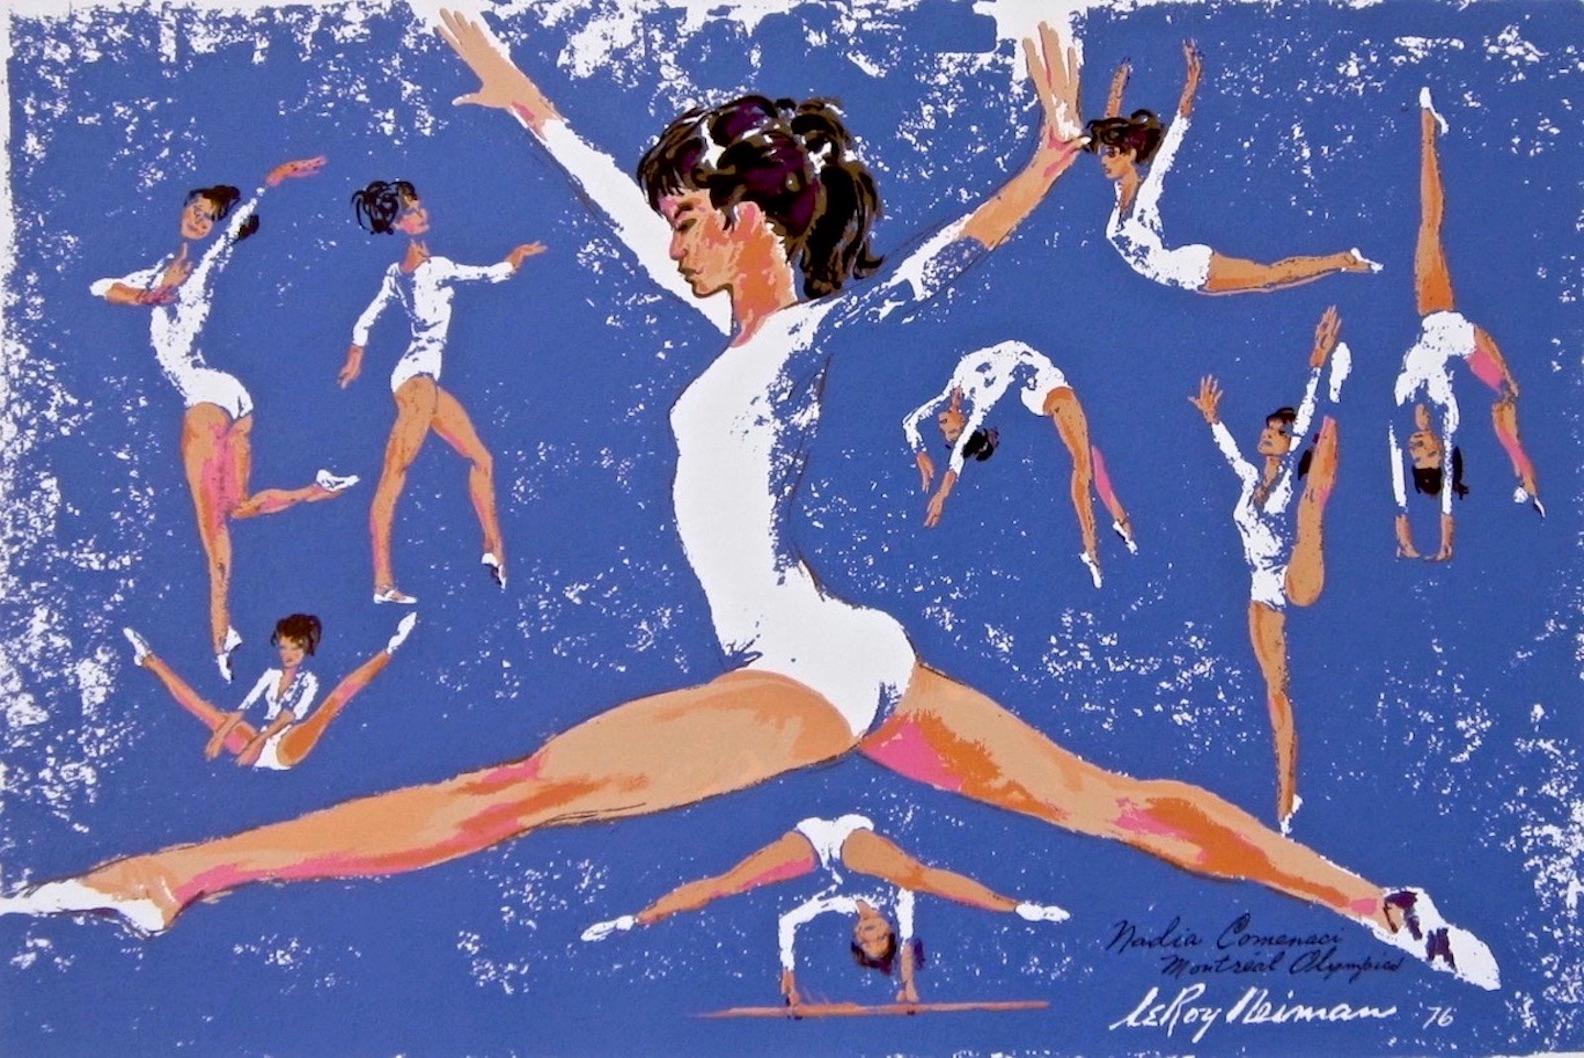 Affiche des Jeux olympiques de Montréal, 1976